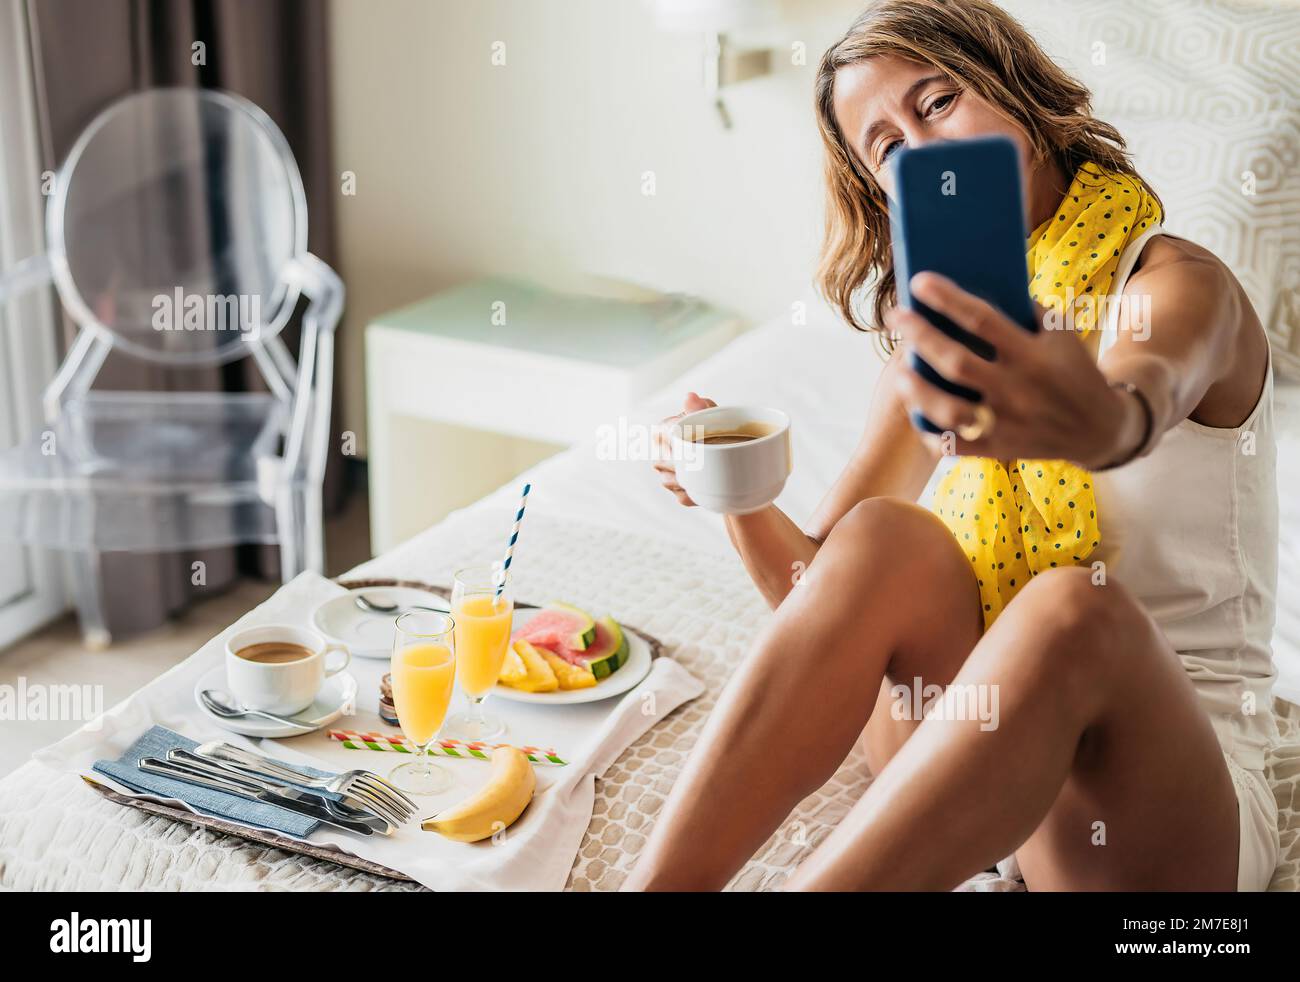 Eine weiße Frau mittleren Alters führt einen Videoanruf, während sie ein Obstfrühstück auf dem Bett in einem Hotelzimmer isst. Sie hält einen Kaffee in der Hand. Stockfoto